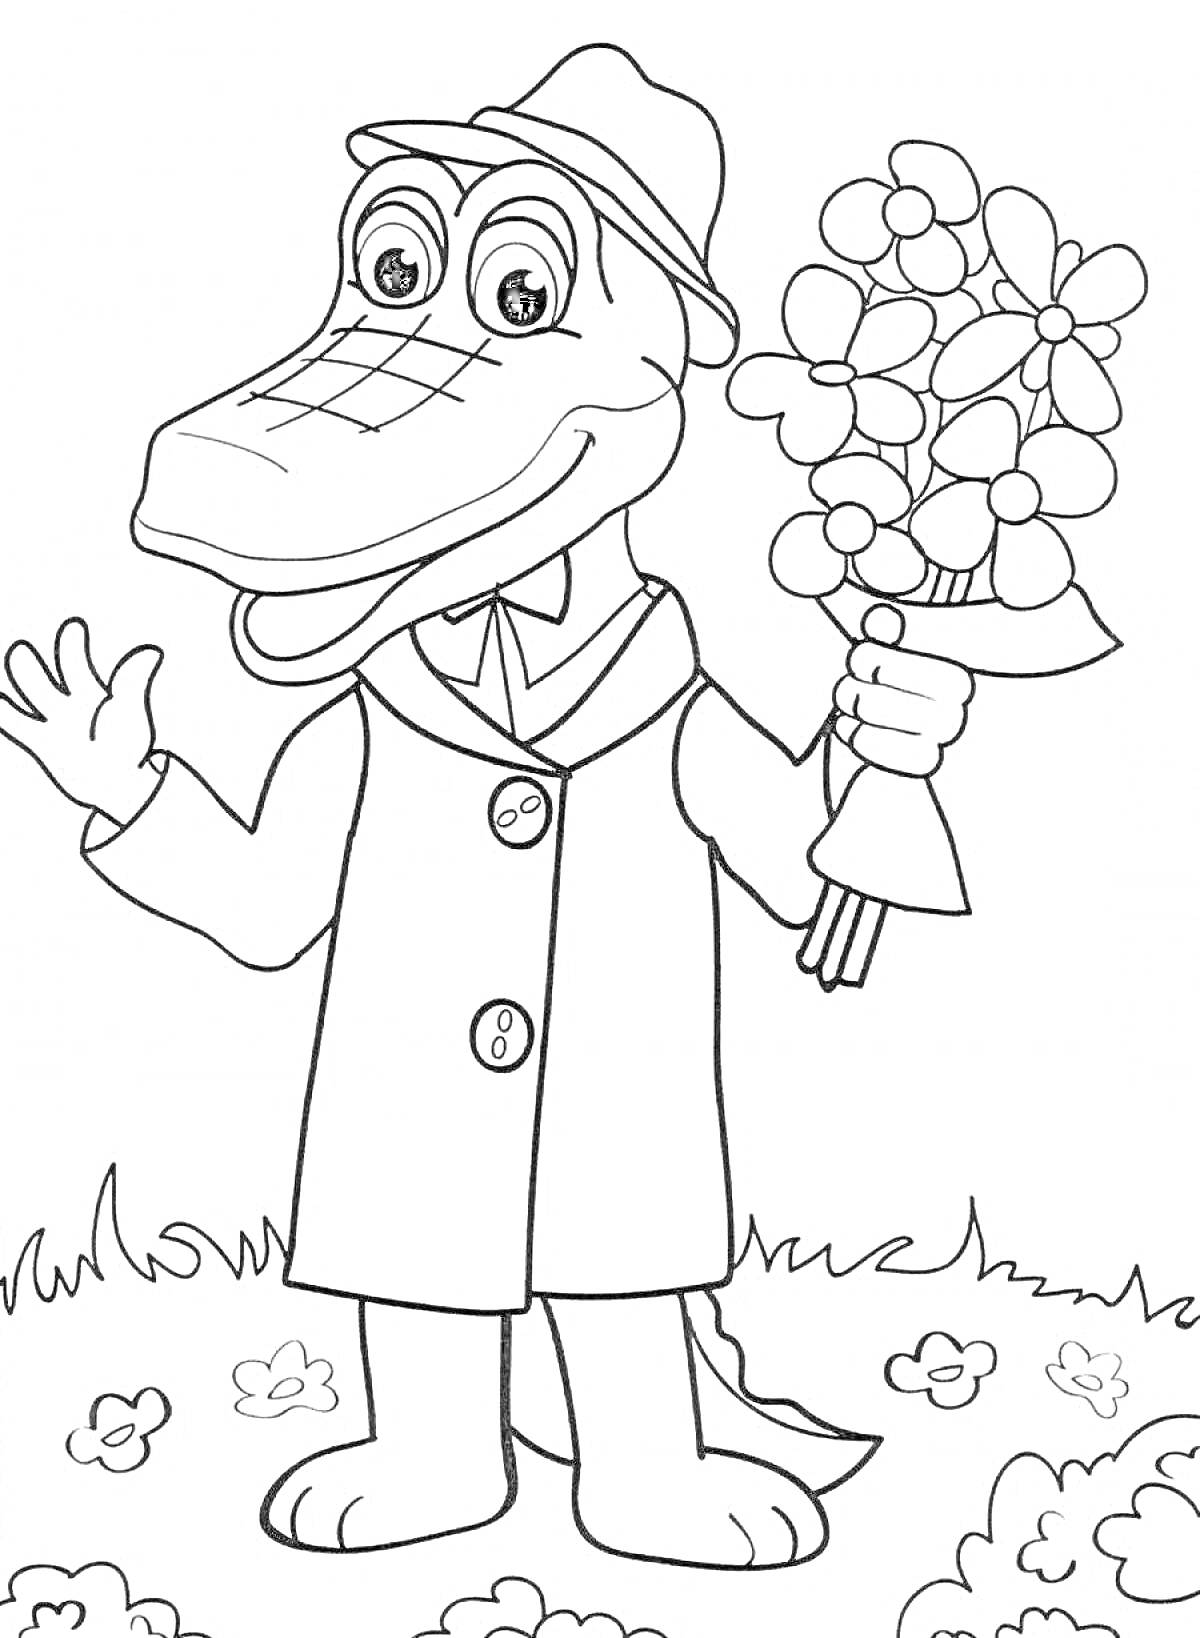 Раскраска Крокодил Гена с букетом цветов в руке и шляпе, стоящий на лужайке с цветами